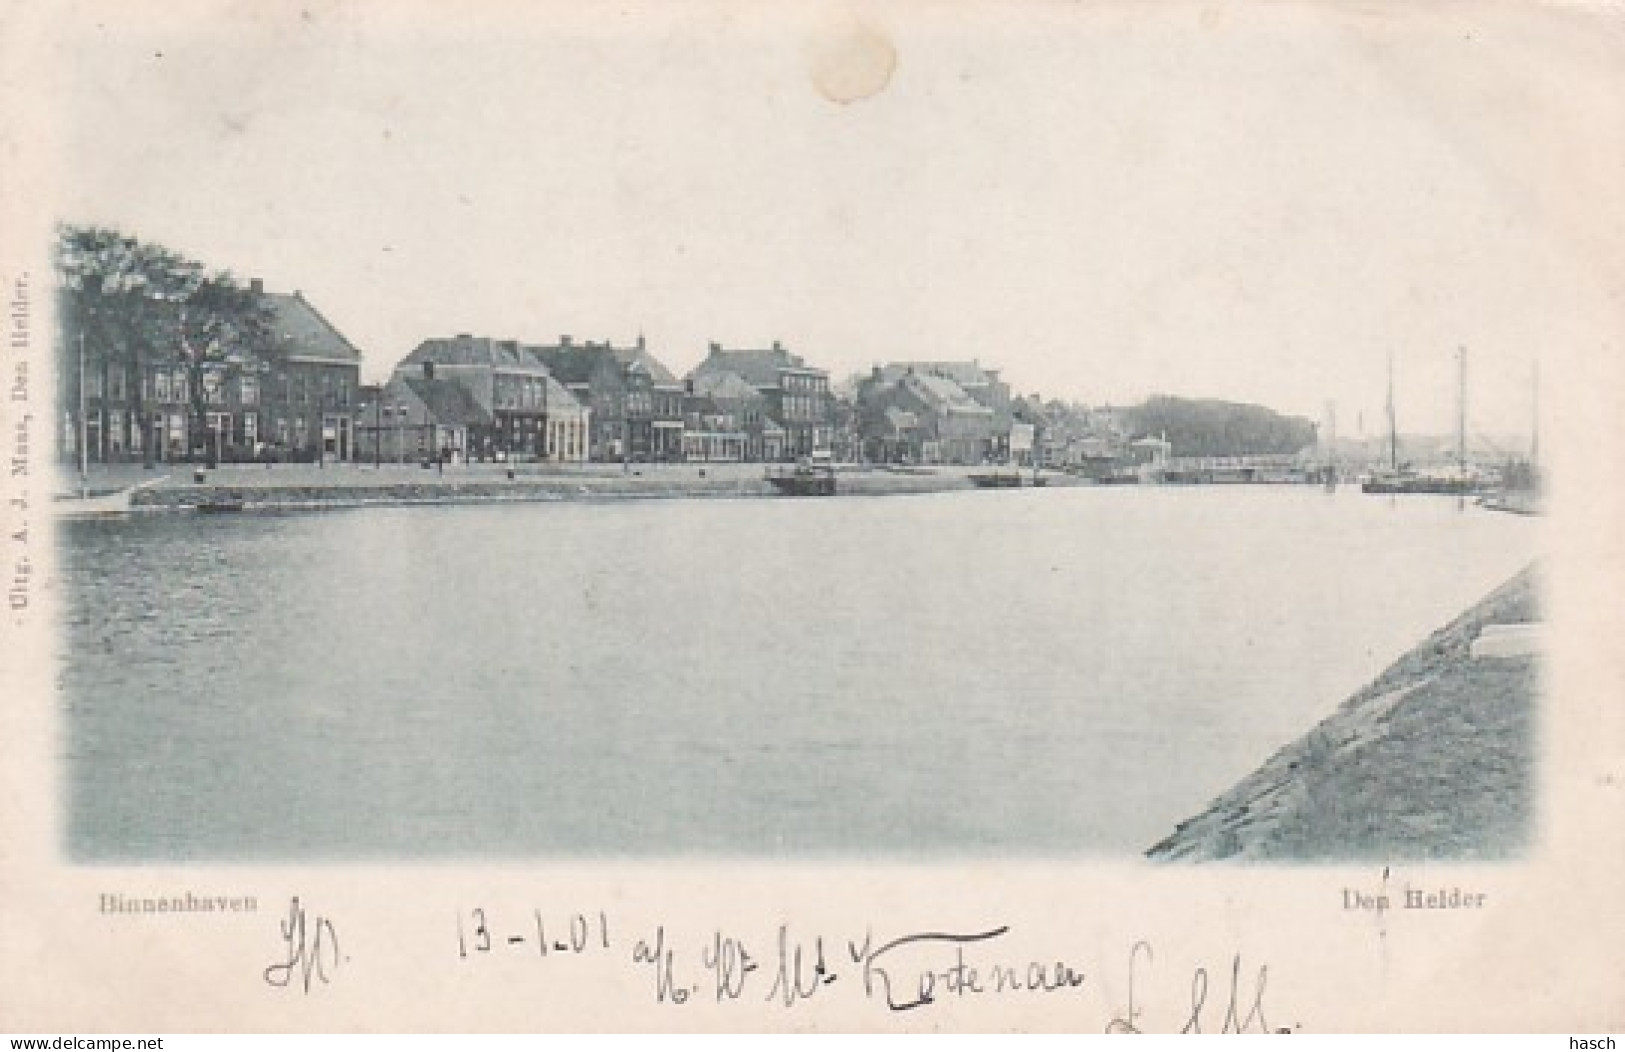 4837121Den Helder, Binnenhaven. 1901. (minuscule Vouwen In De Hoeken) - Den Helder